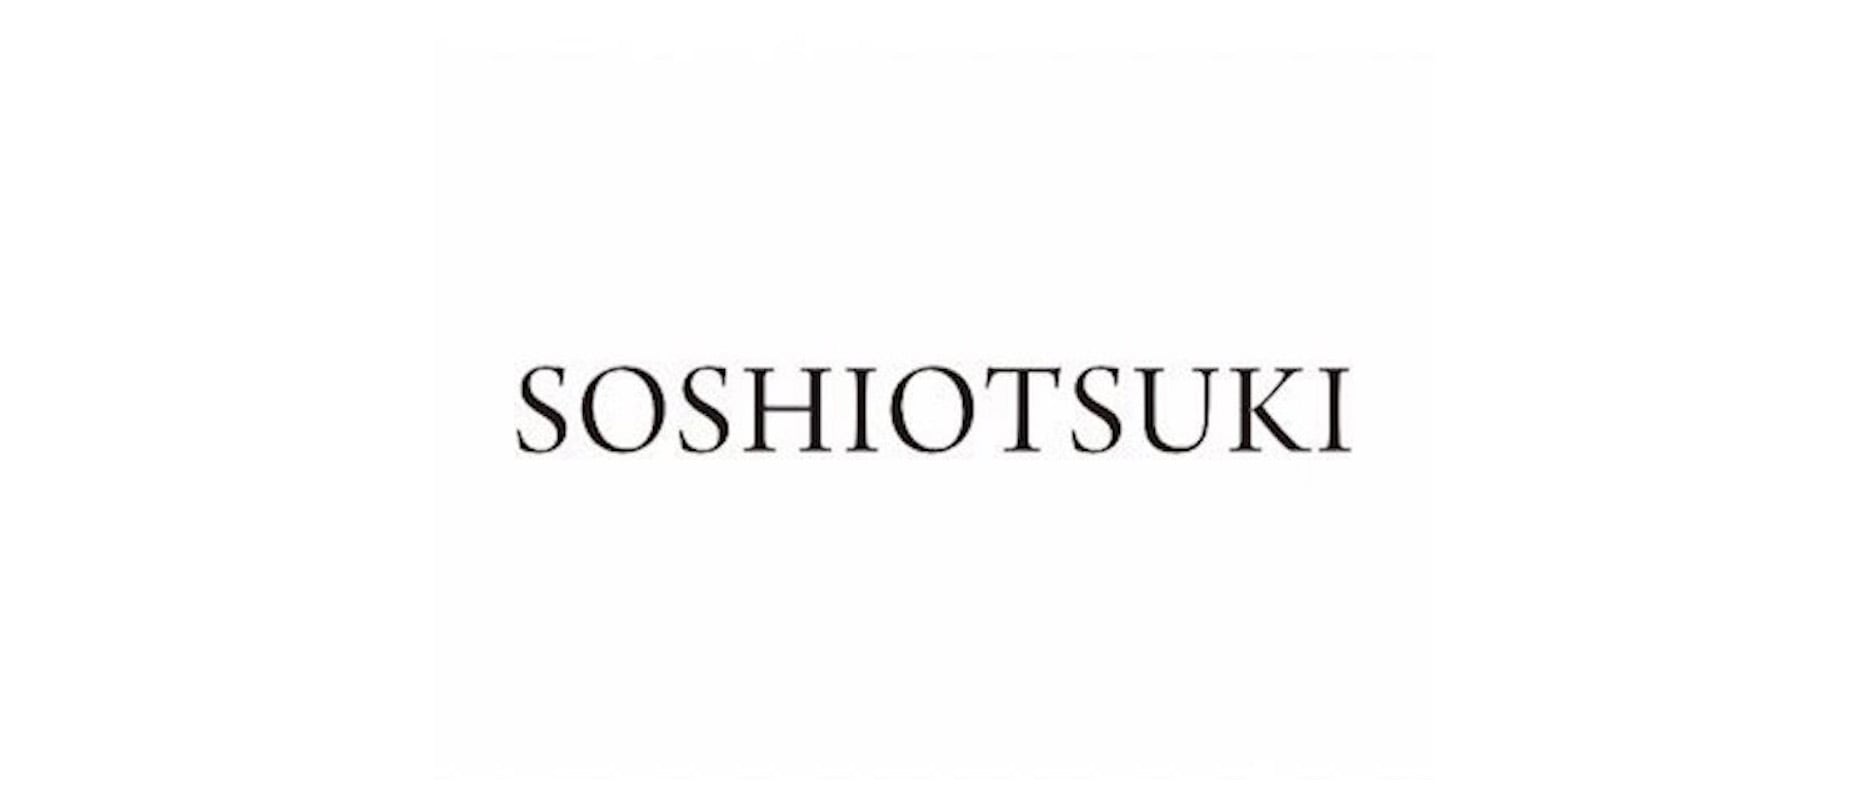 SOSHIOTSUKI